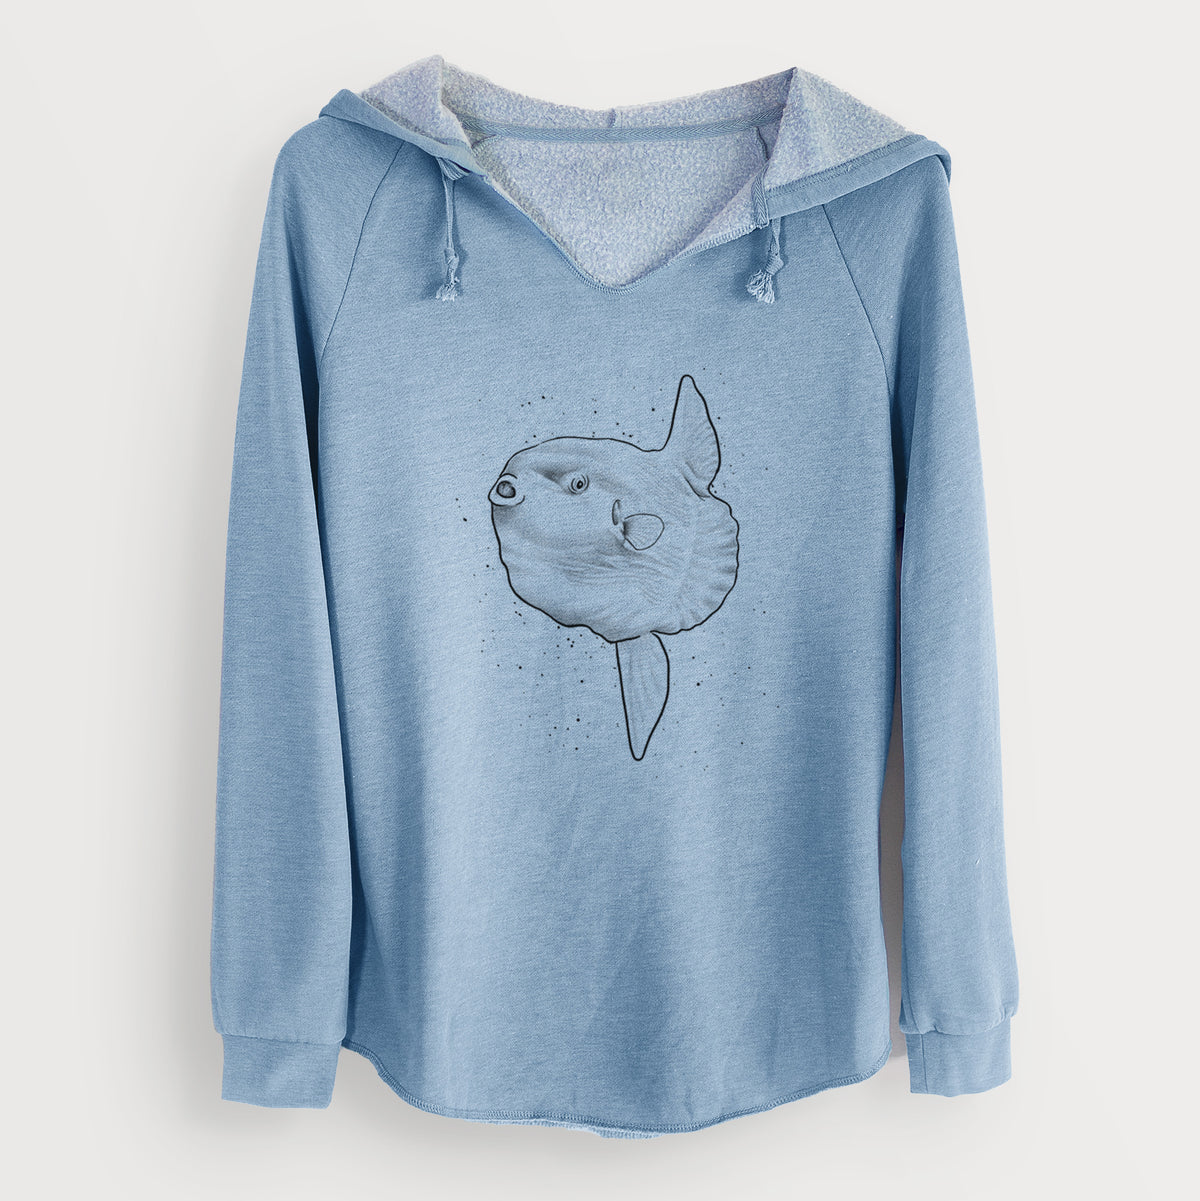 Ocean Sunfish - Mola mola - Cali Wave Hooded Sweatshirt